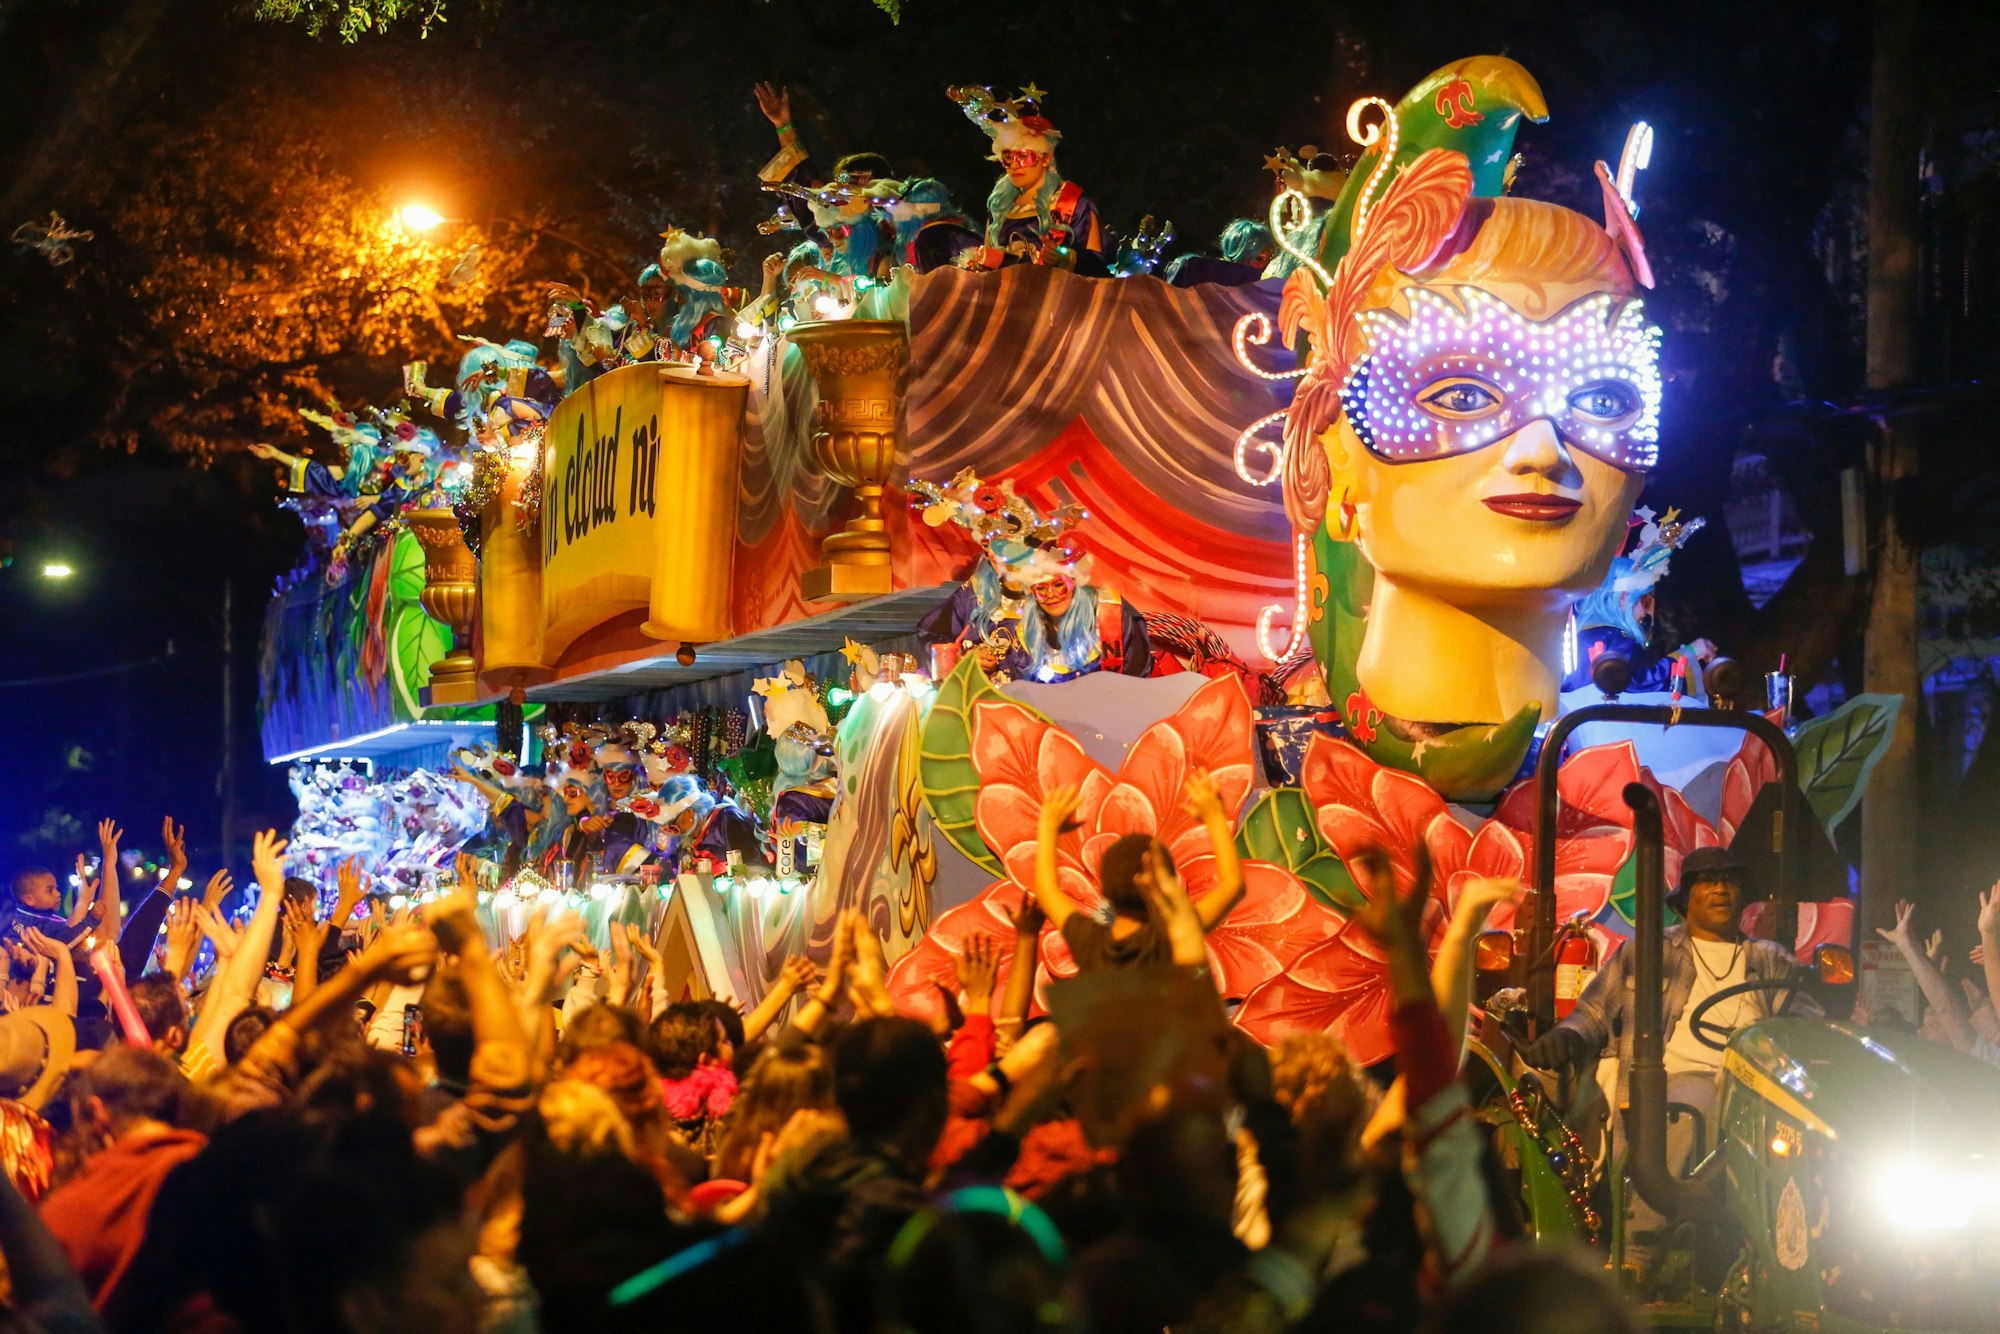 Ein bunter Karnevalswagen bei einer Parade.